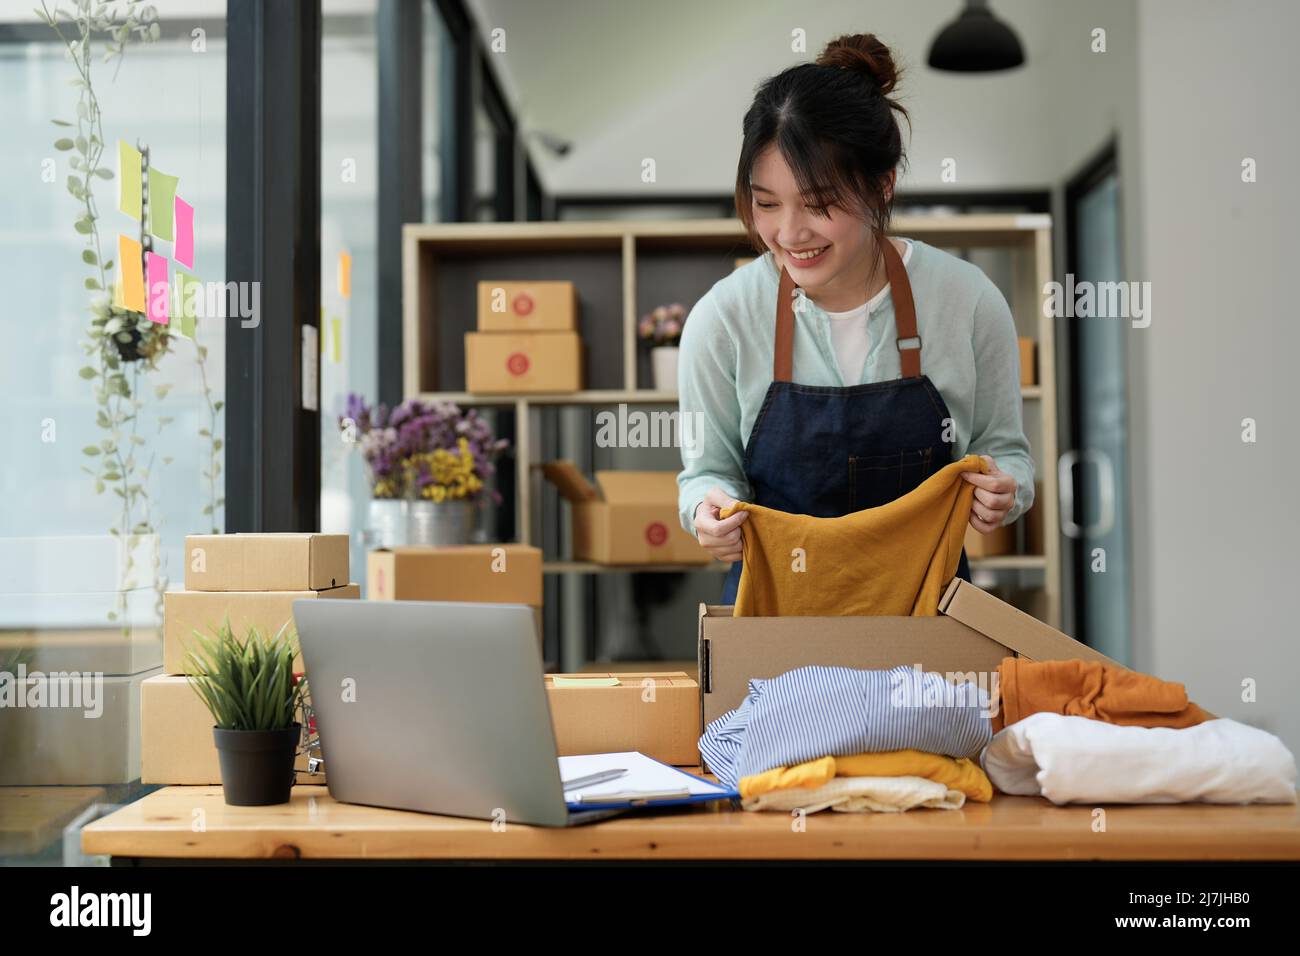 Junge asiatische Startup-Unternehmer Kleinunternehmer arbeiten zu Hause, Verpackung und Lieferung Situation. Stockfoto